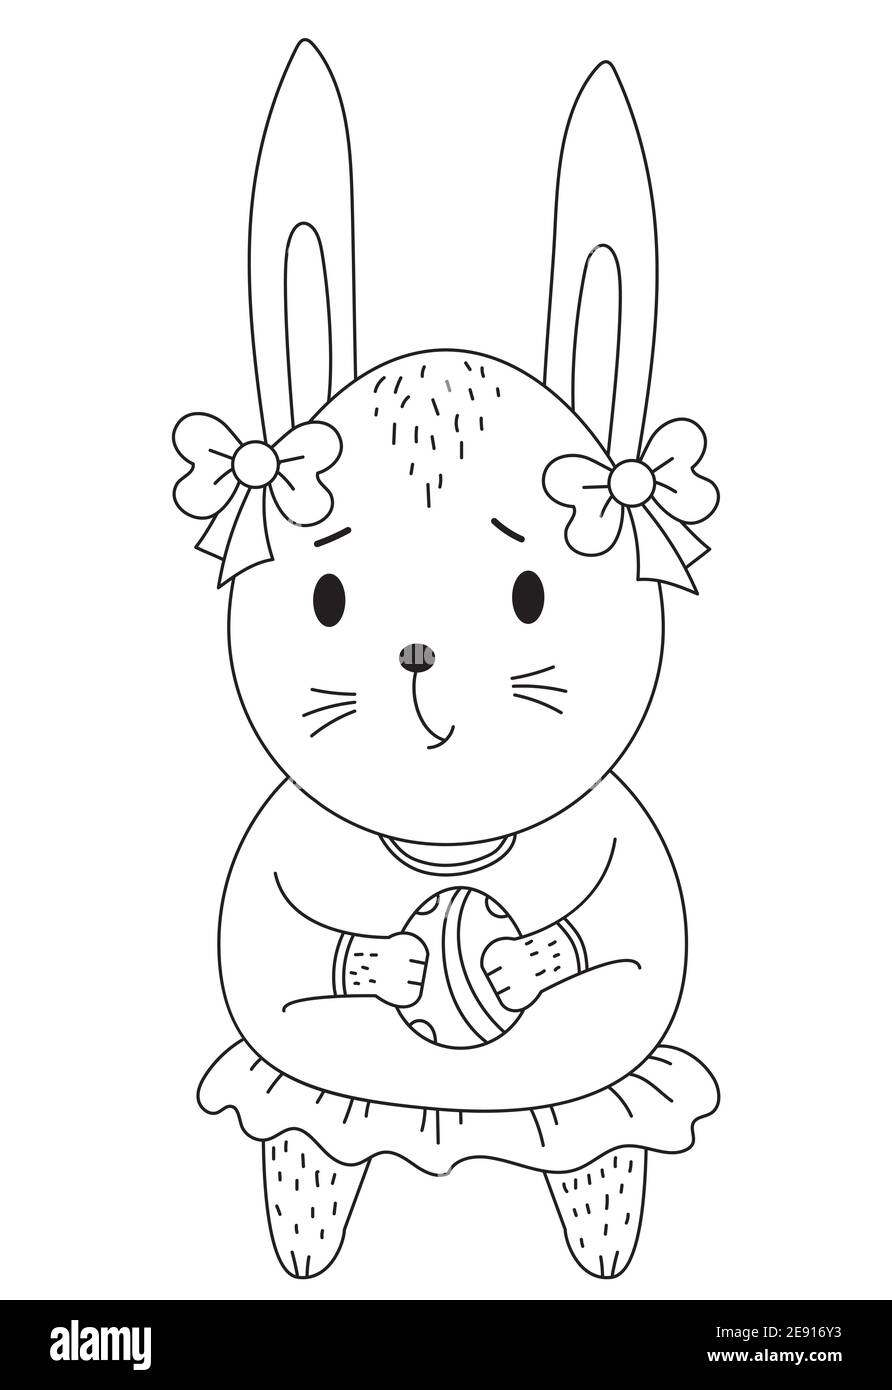 Conejito de Pascua. Linda chica con un huevo de Pascua en sus patas y con arcos en sus orejas. Vector. Línea negra, contorno. Dibujo decorativo Ilustración del Vector